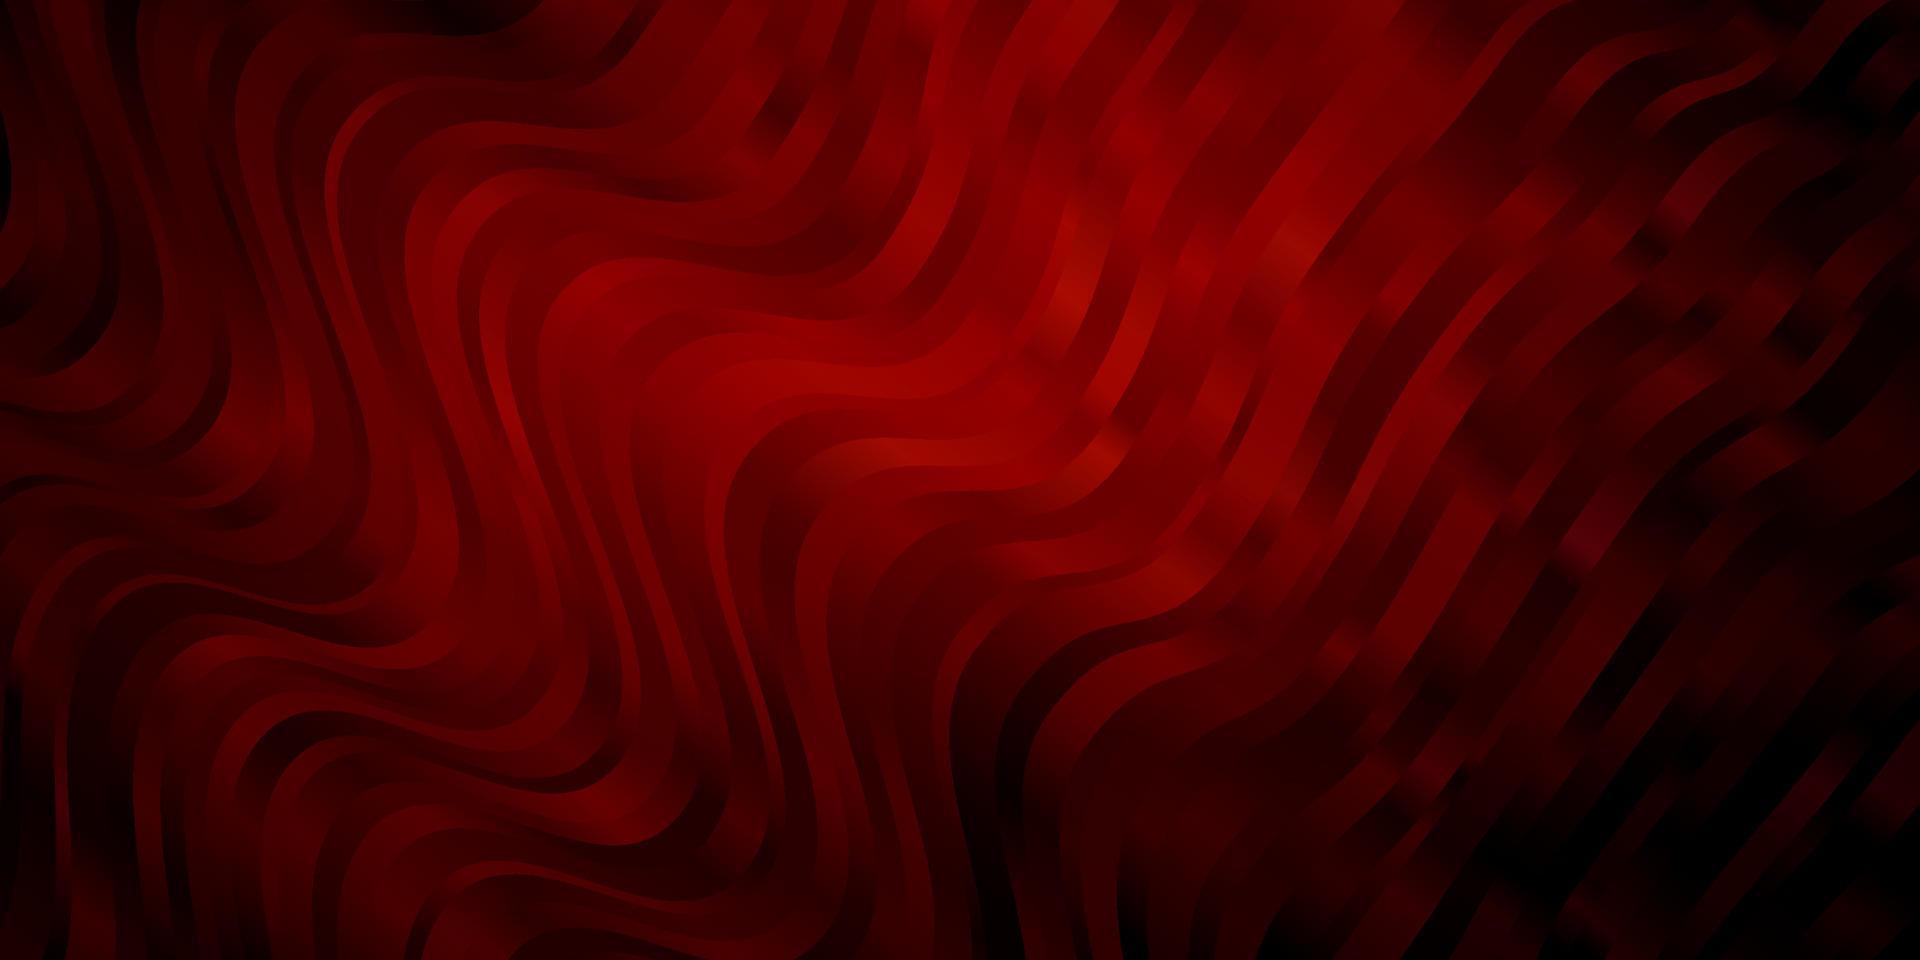 layout de vetor vermelho escuro com curvas.